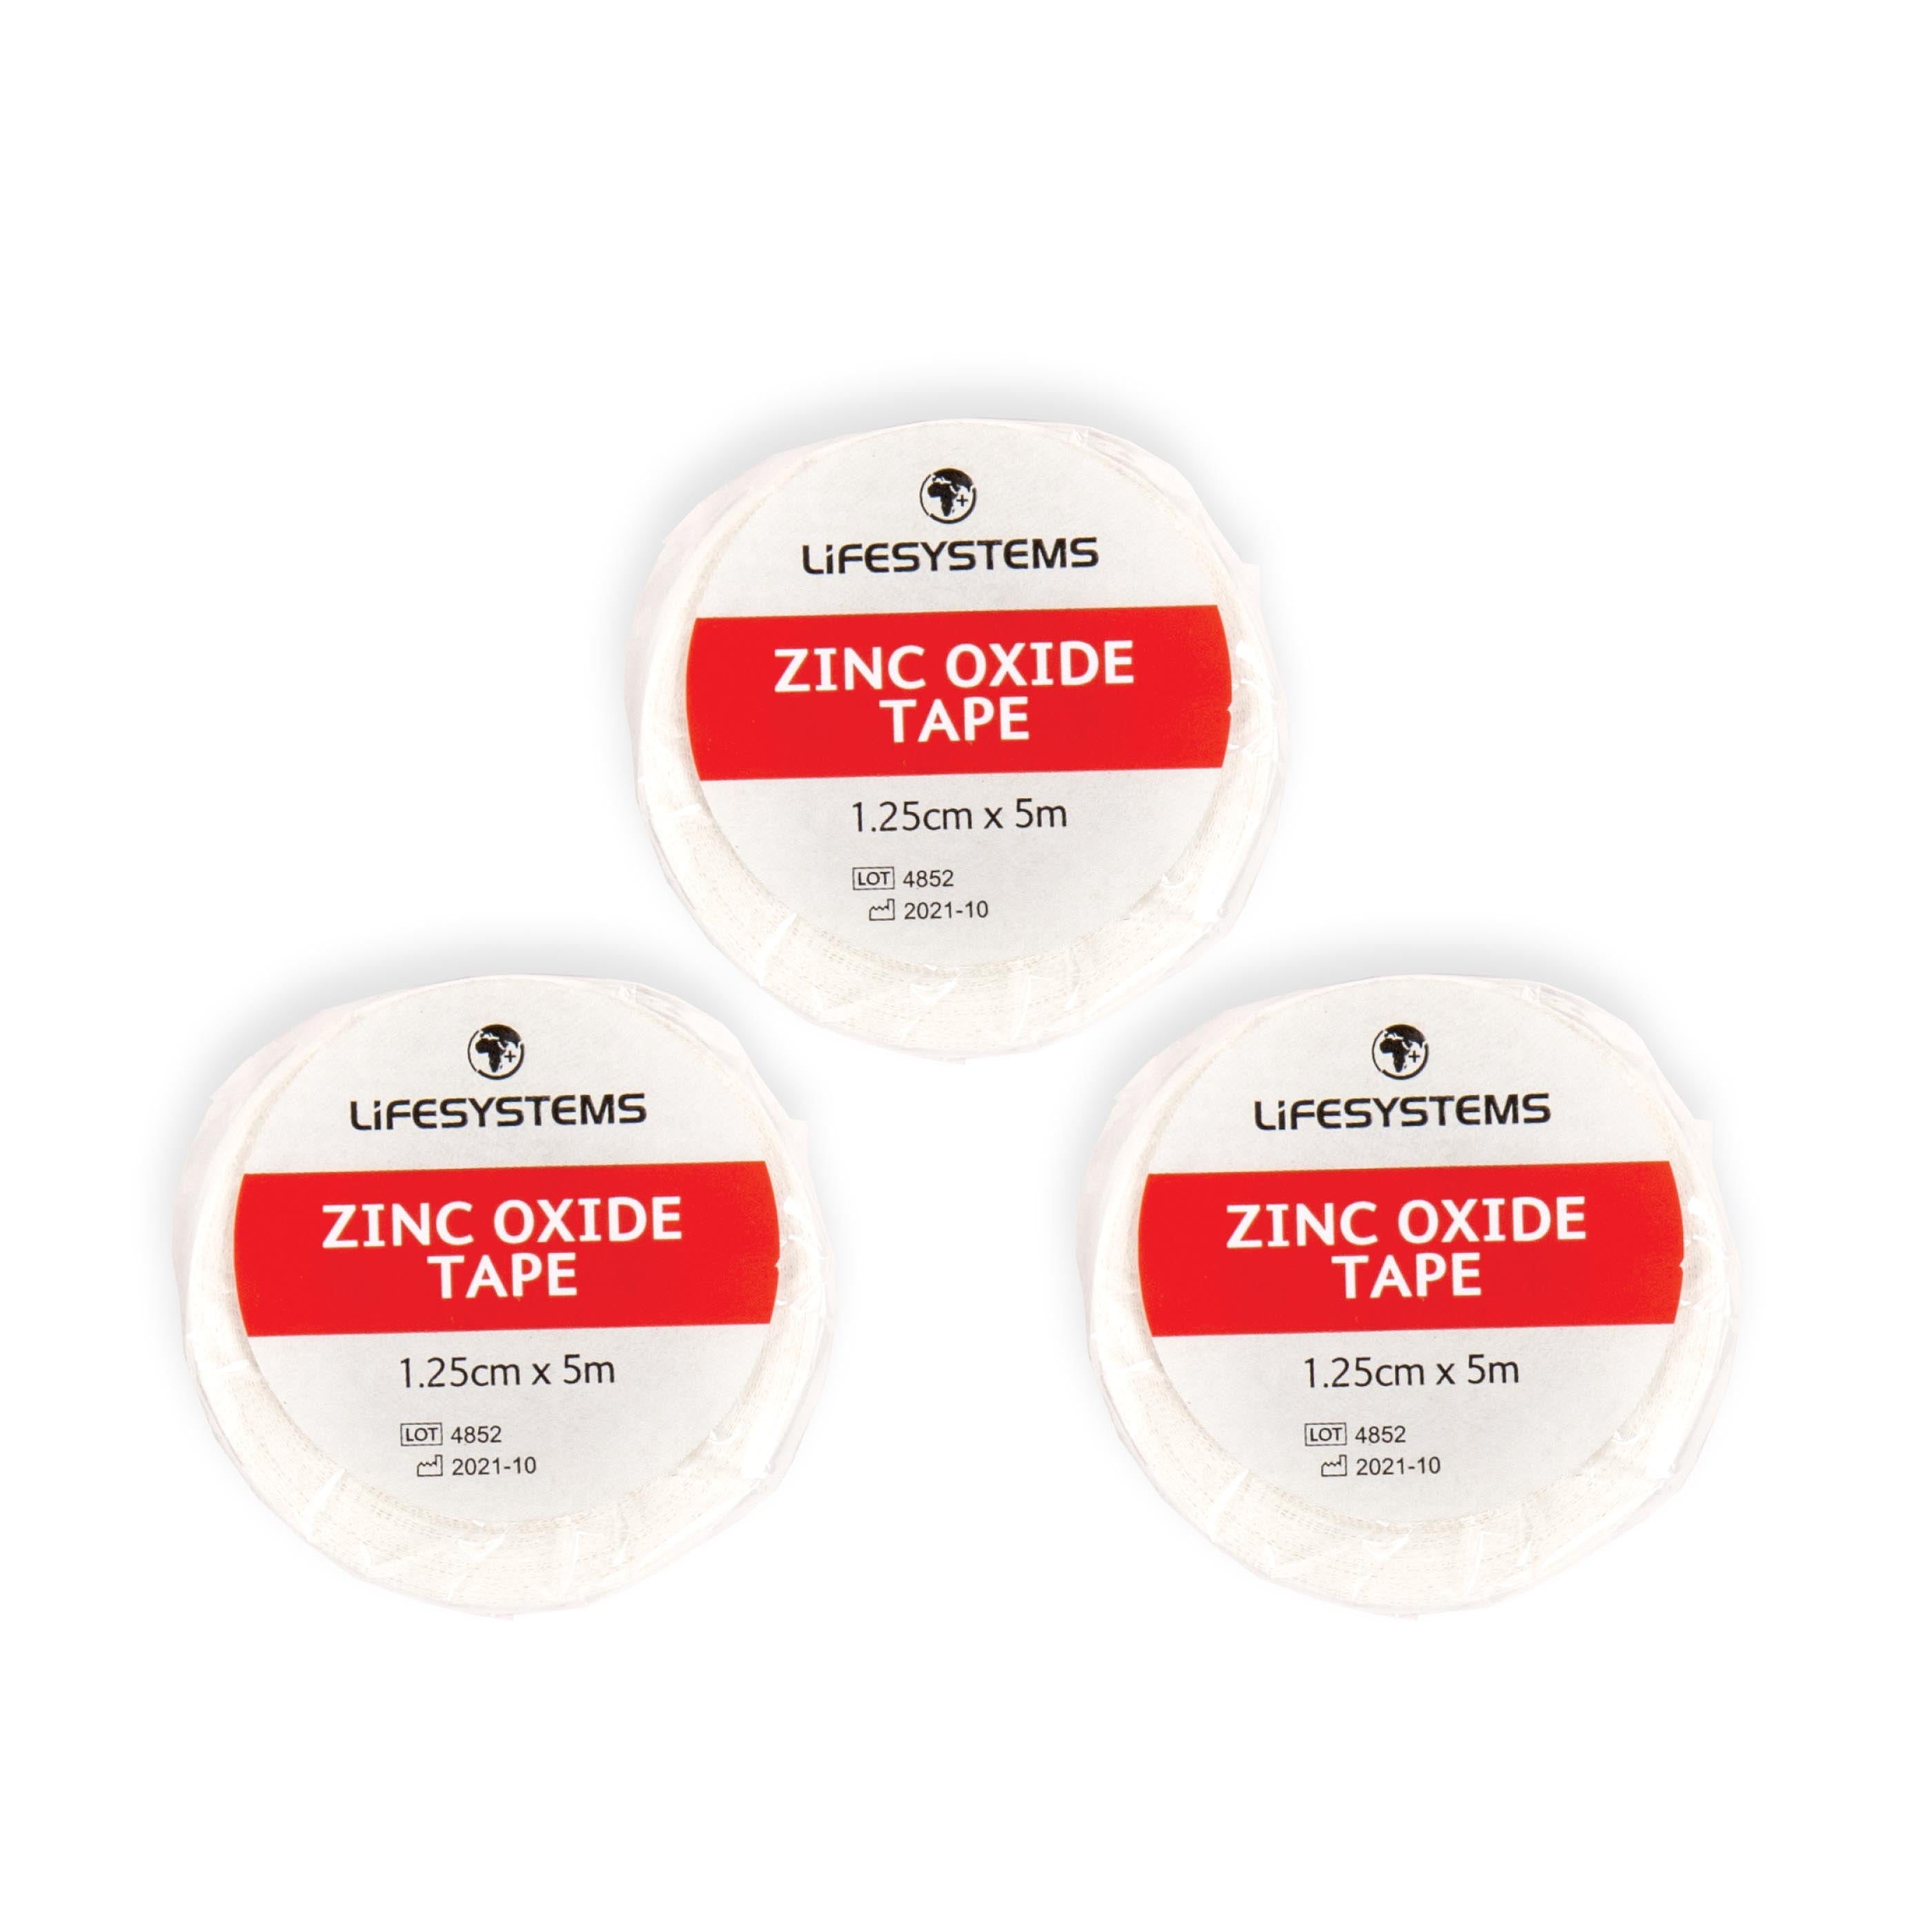 Zinc Oxide Tape - variant[1.25cm x 5m]